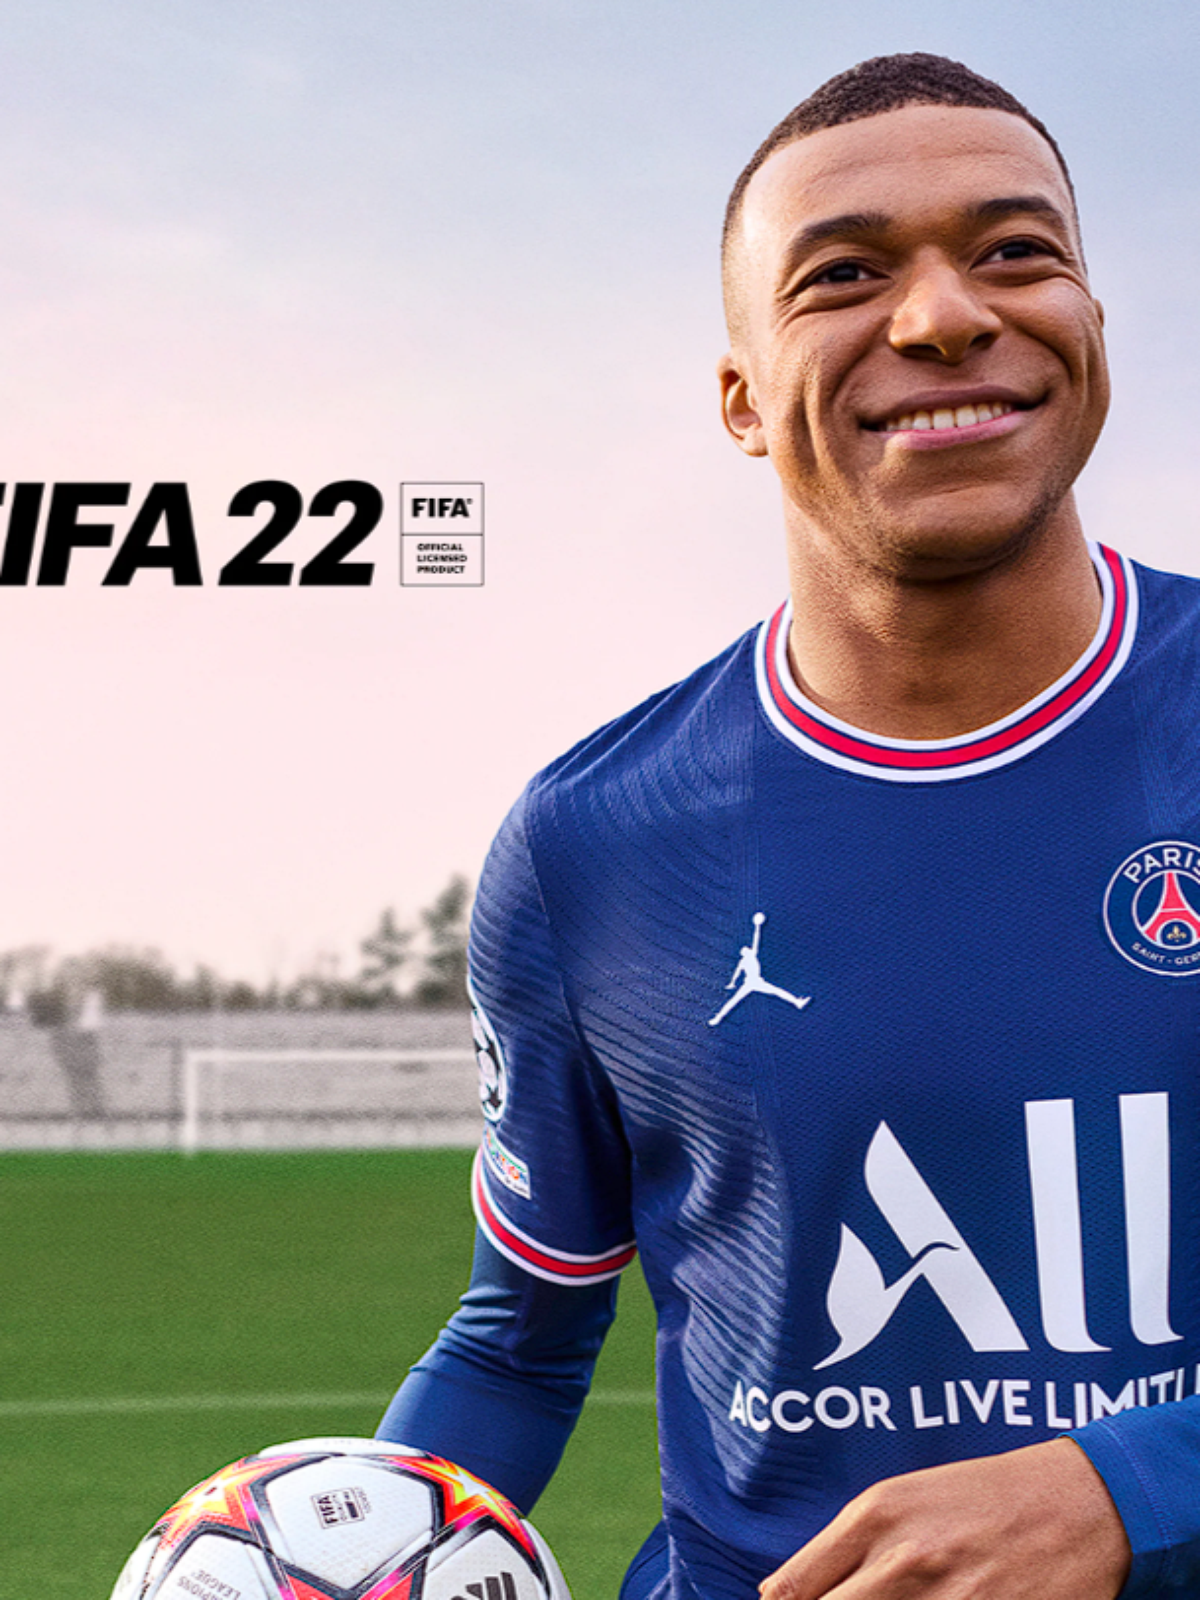 FIFA 23: mod melhora imersão e realismo do jogo no PC